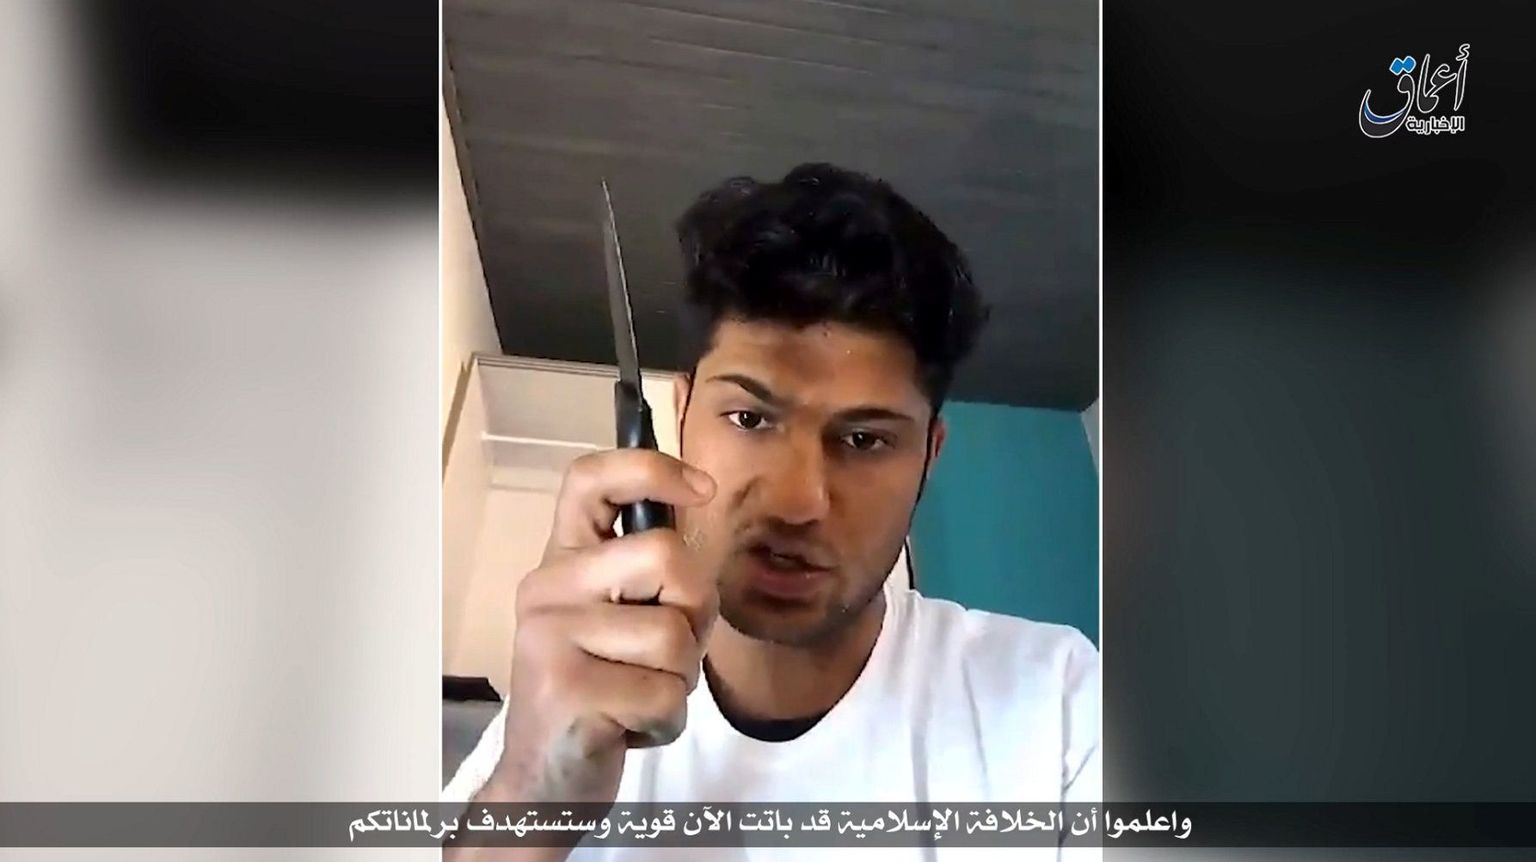 ISISe avaldatud video Baieri liidumaal  regionaalrongis kirve ja noaga nelja Hongkongi turisti rünnanud mehest.